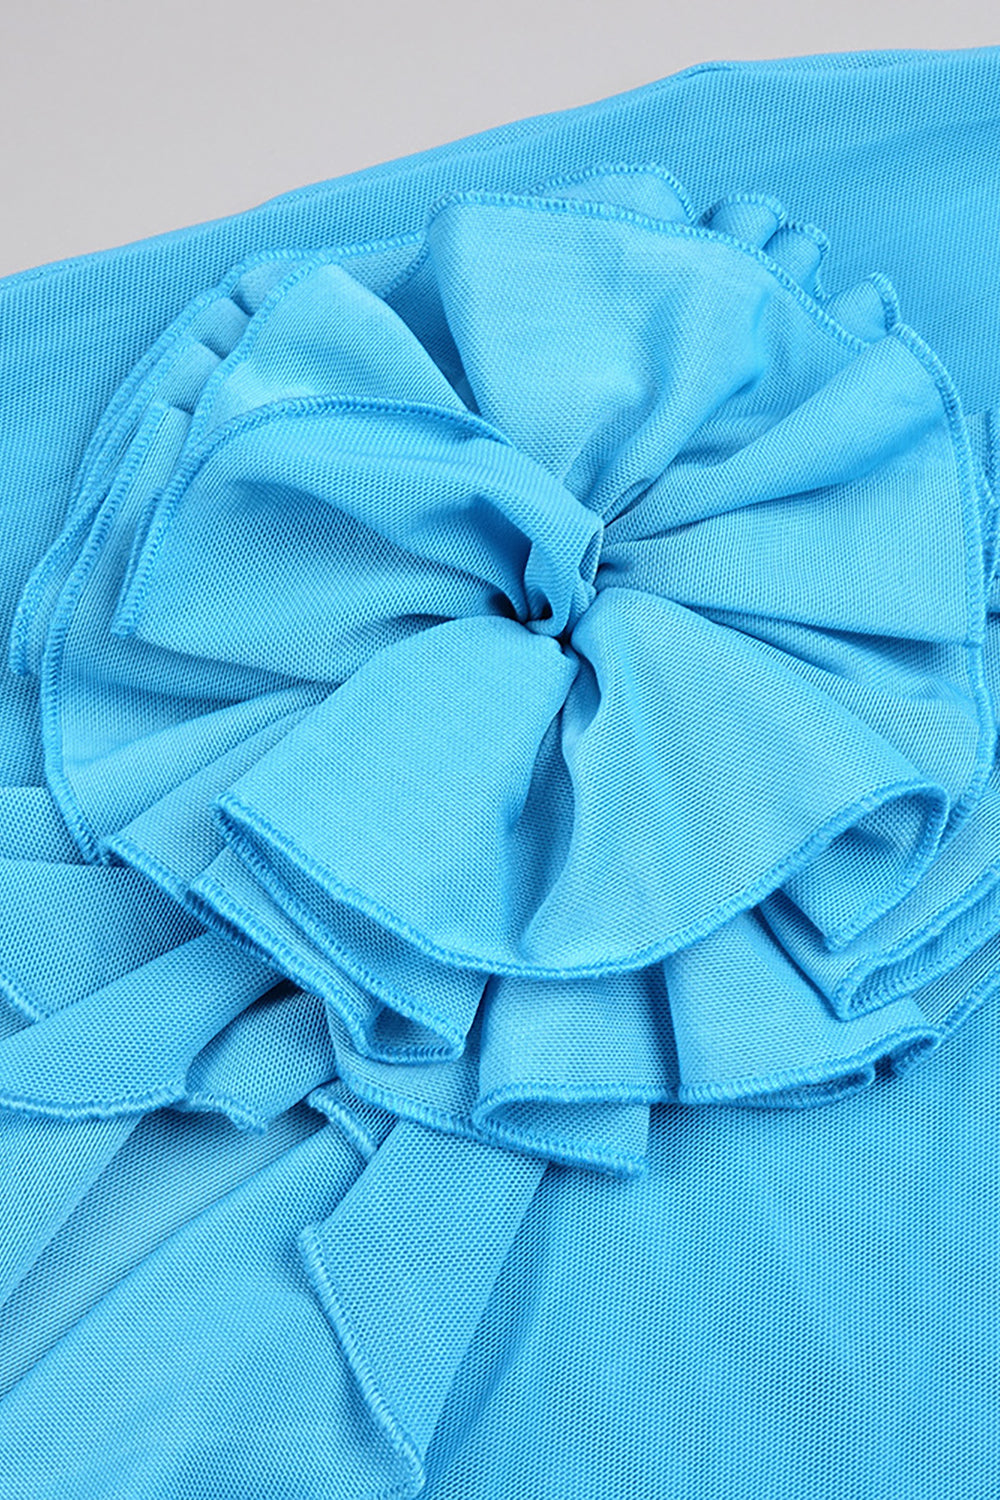 Robe asymétrique bleue à volants et ras du cou à fleurs